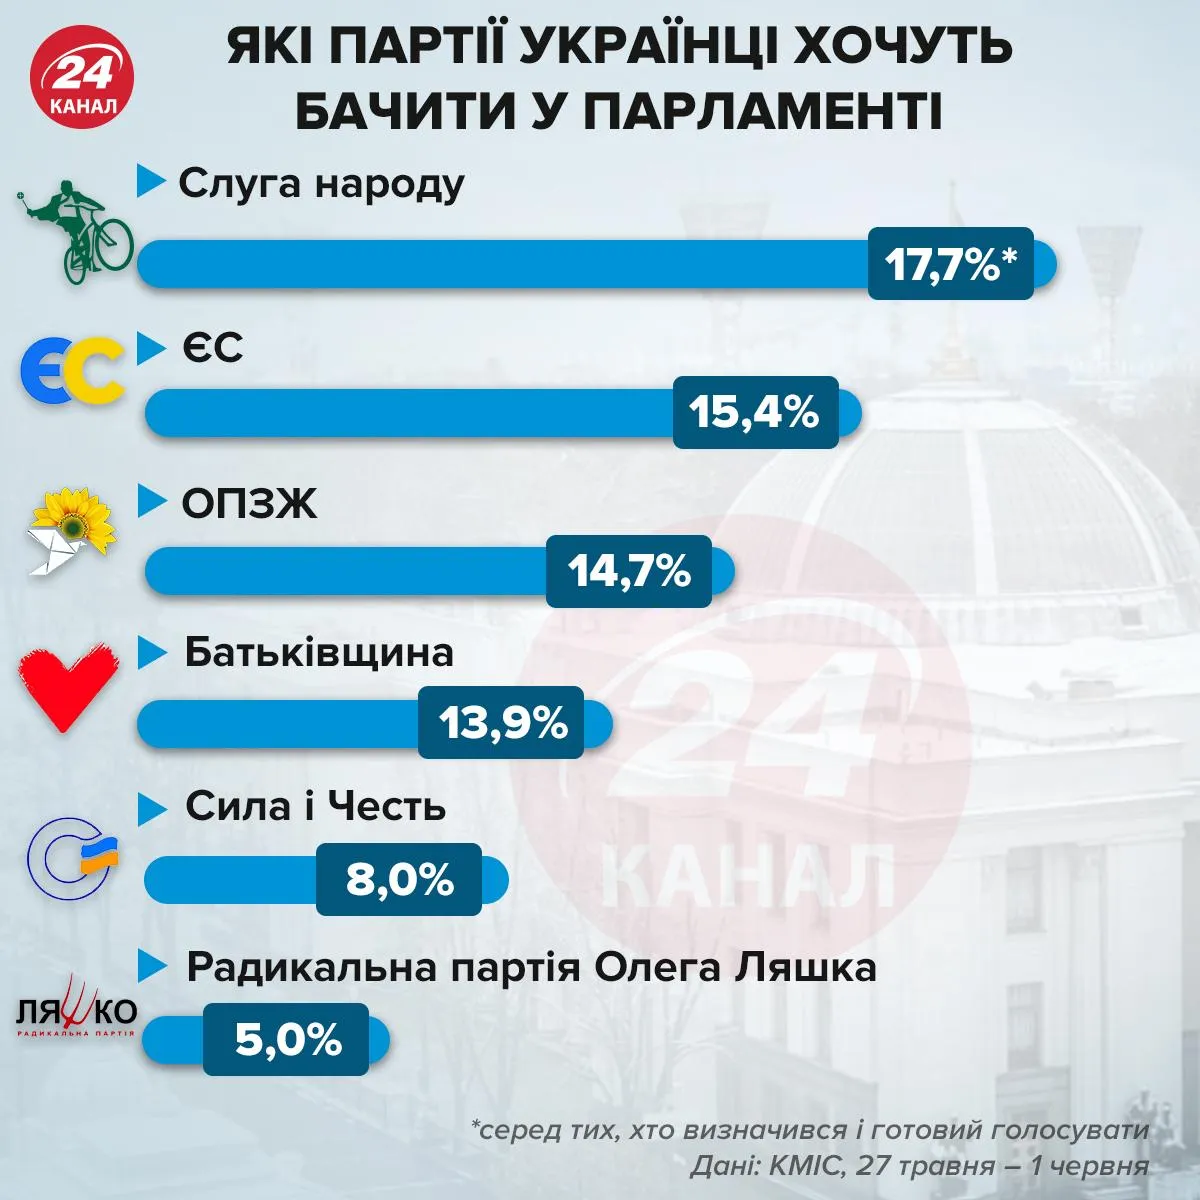 Какие партии украинцы хотят видеть в парламенте / Инфографика 24 канала